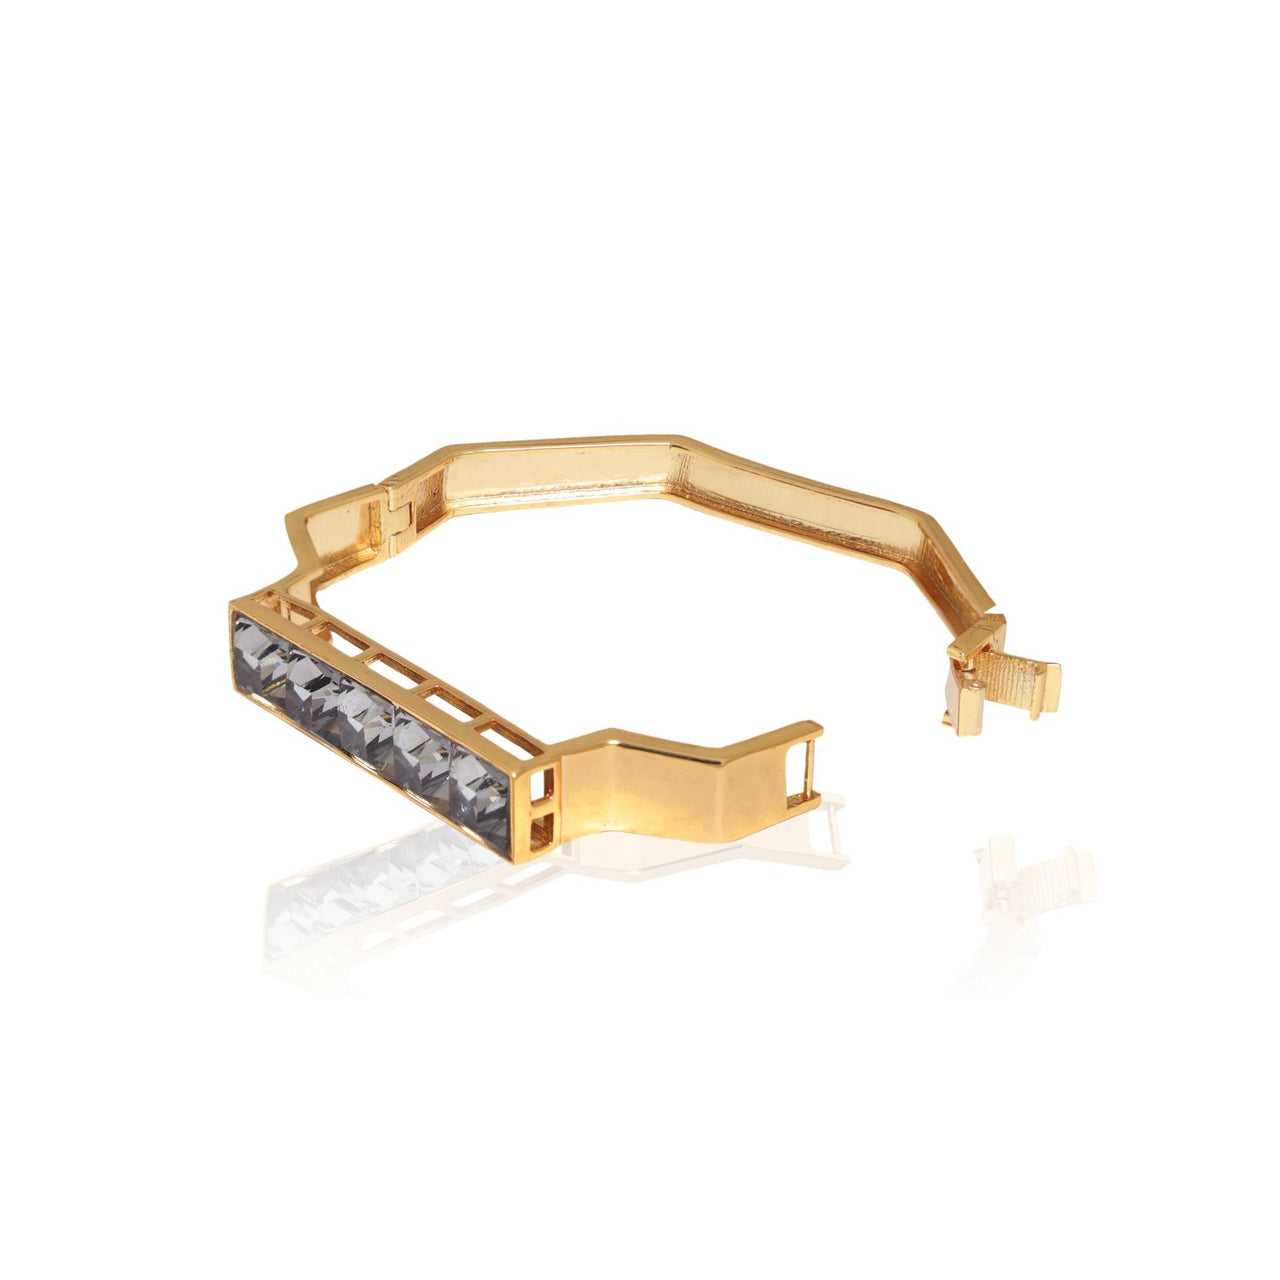 Adjustable bracelet adorned with Swarovski crystals